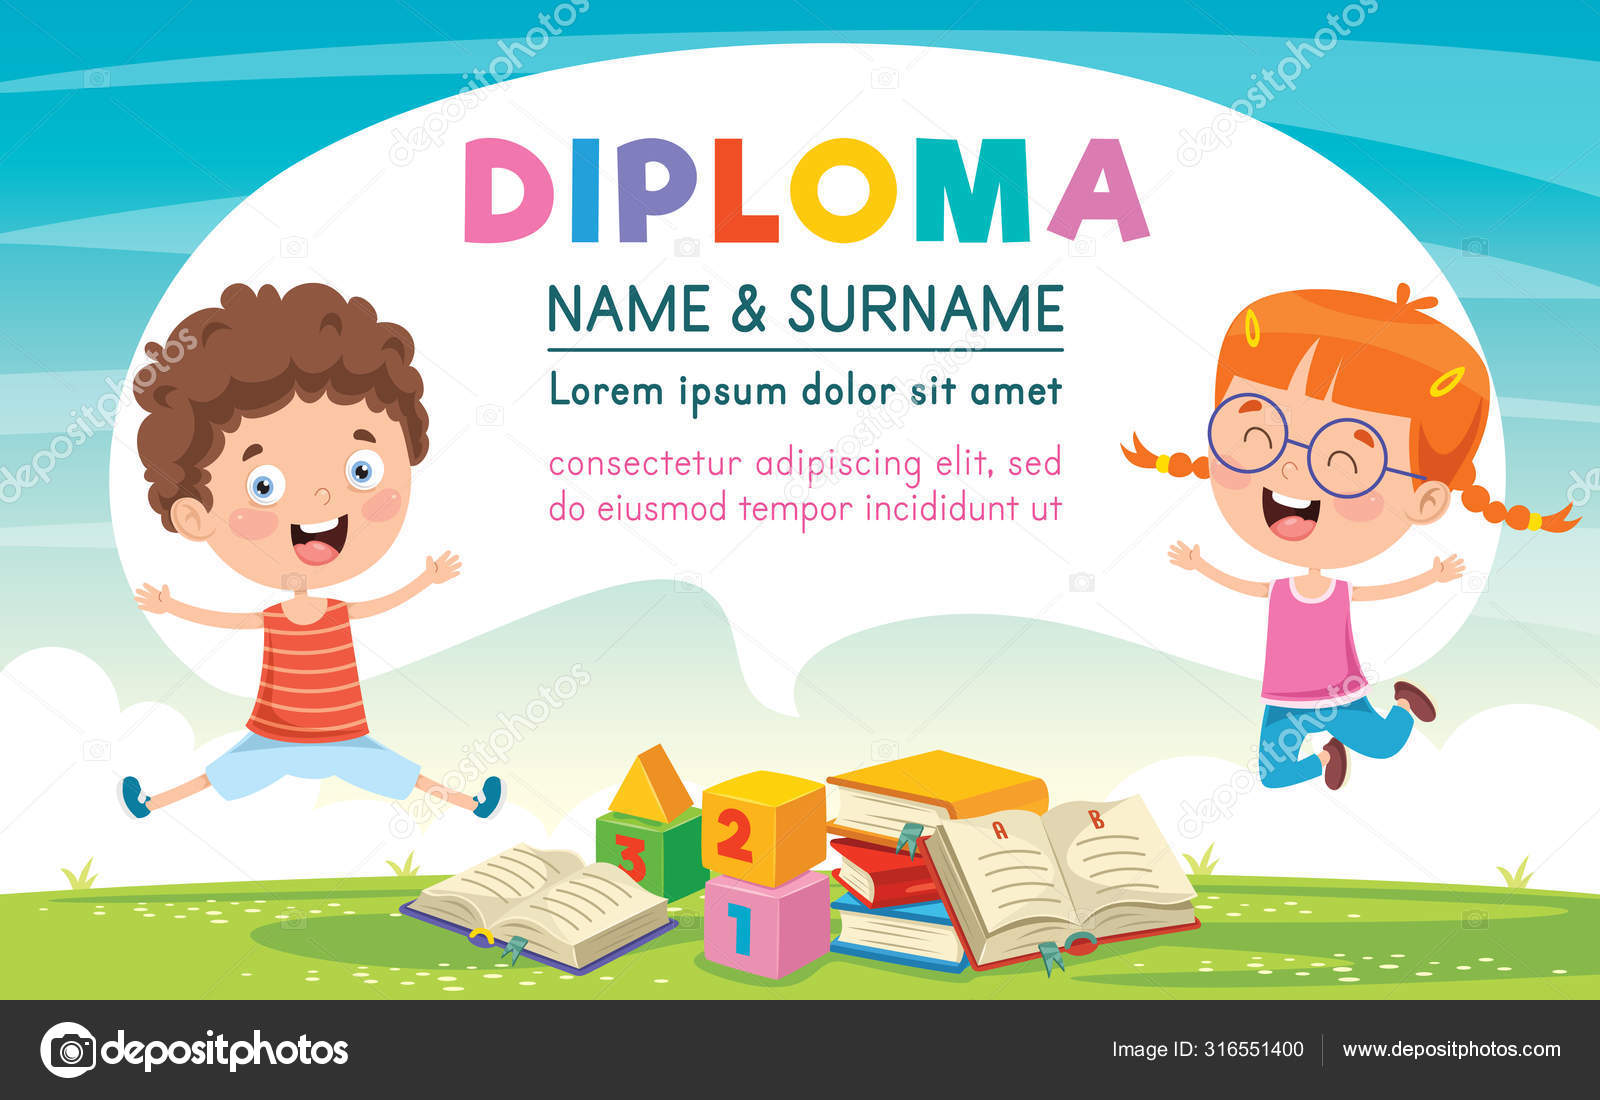 Diploma Certificate Template Design Children Education Stock For Children